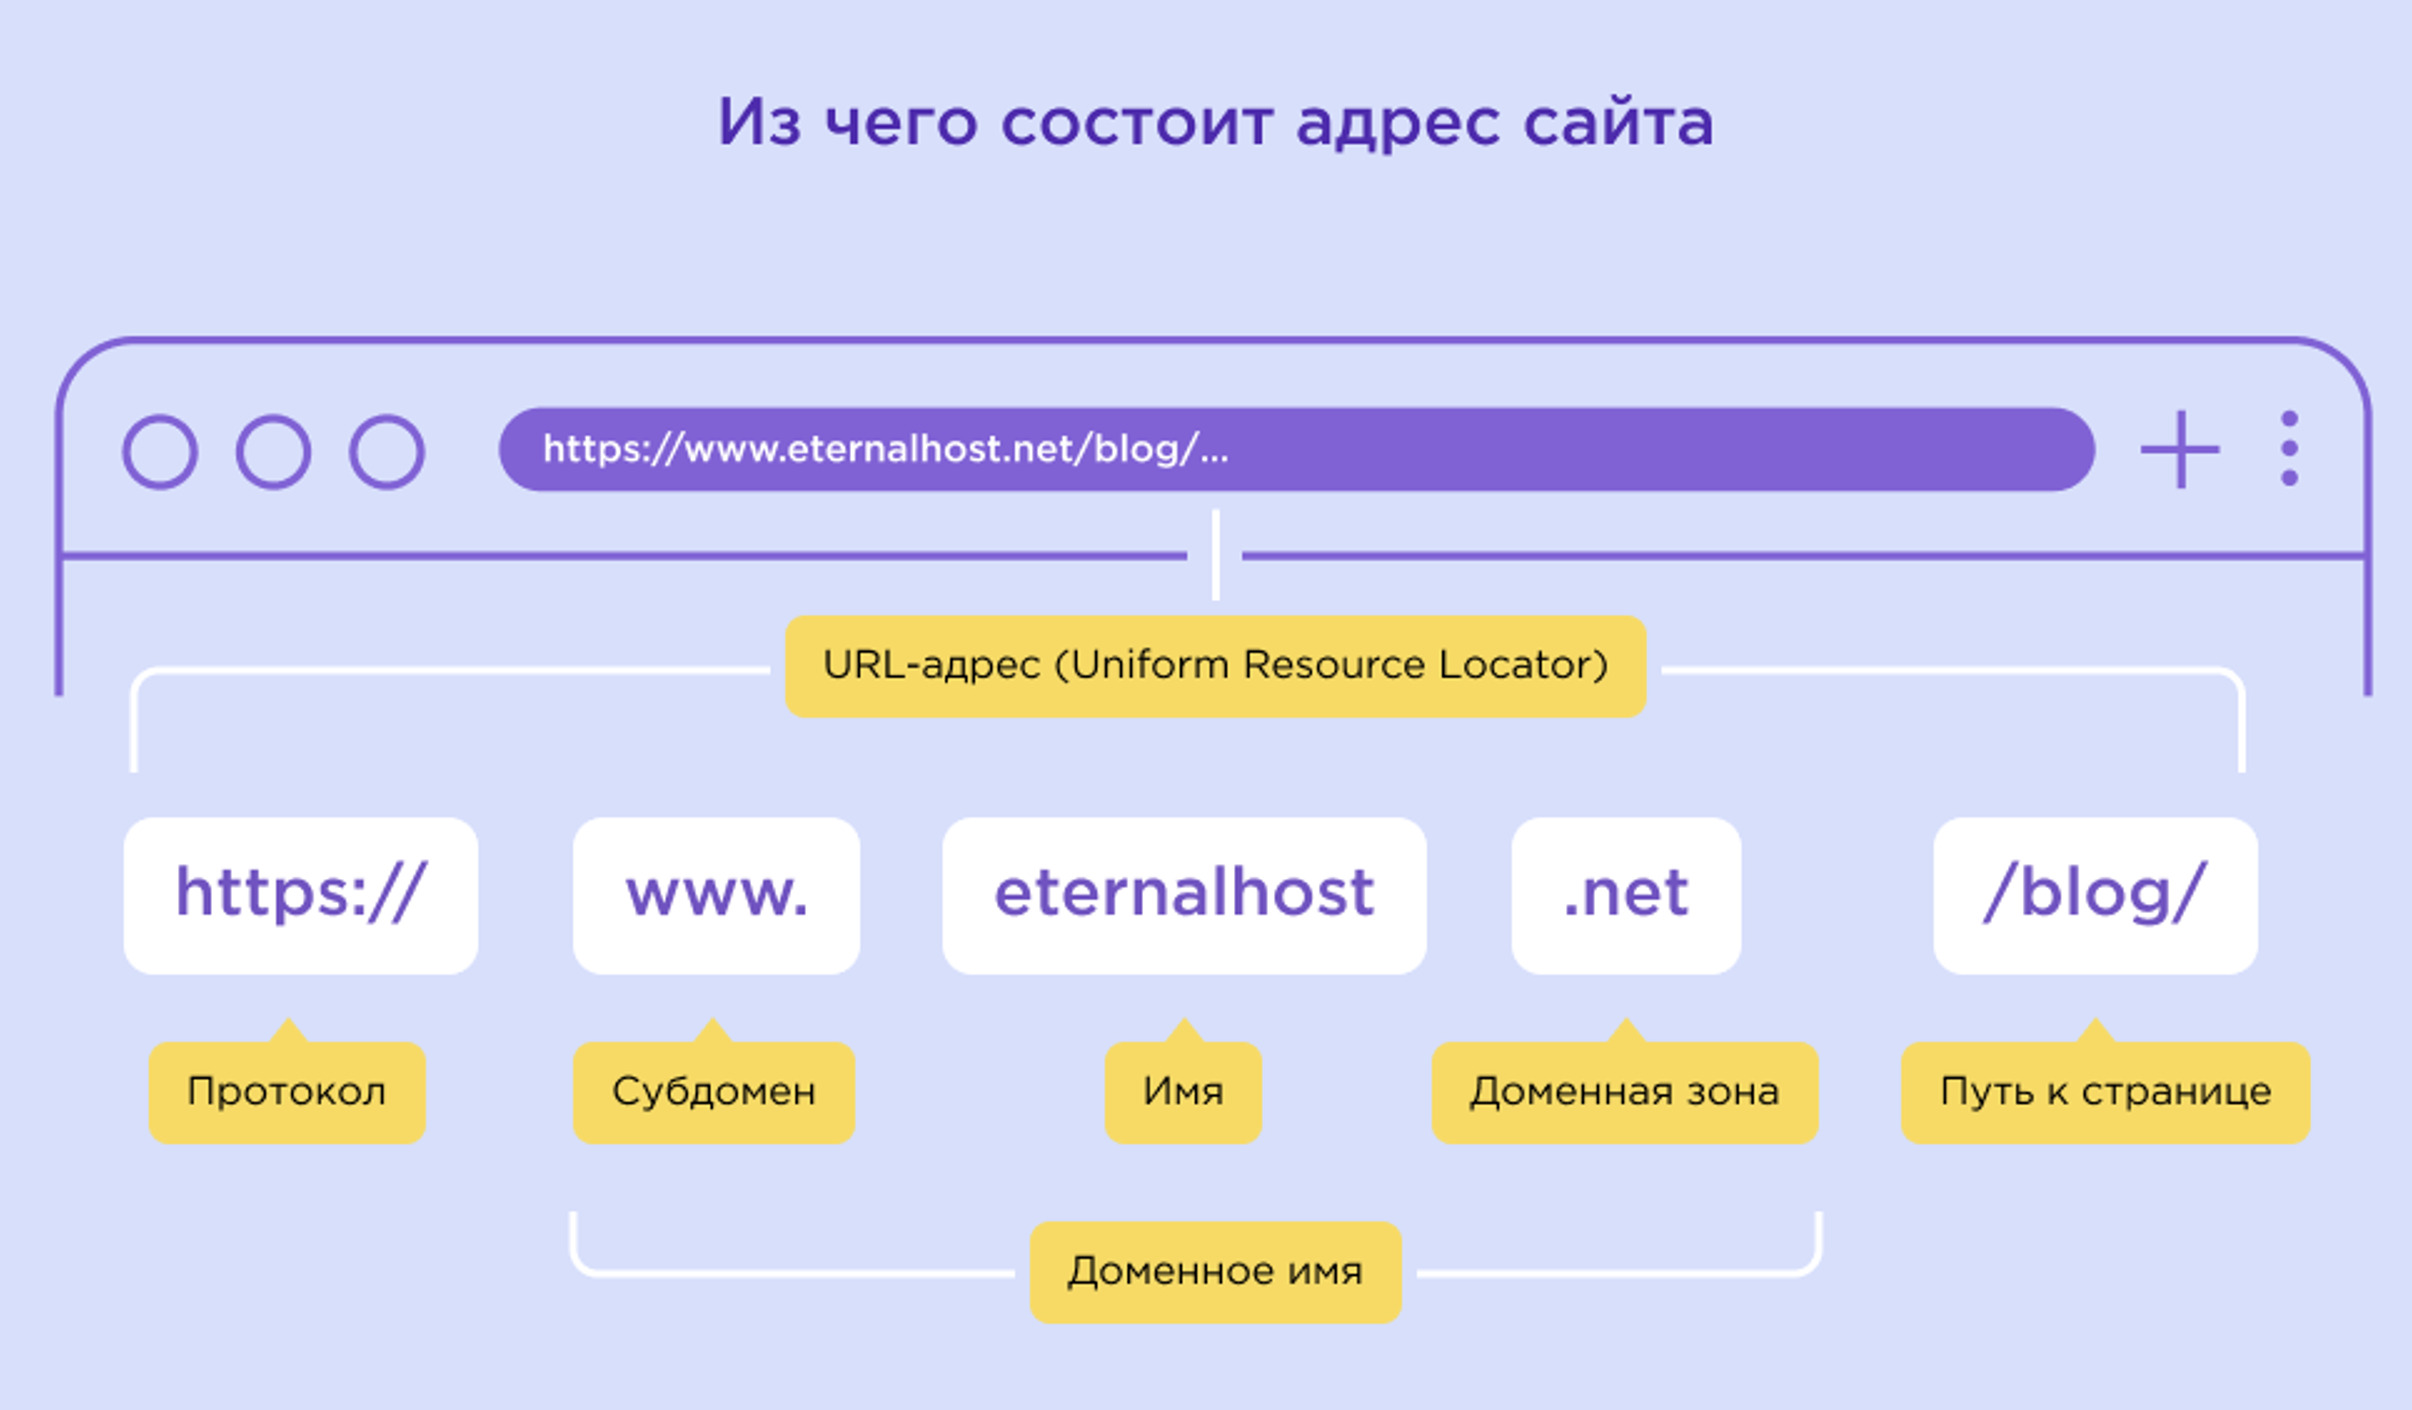 Правильная структура URL